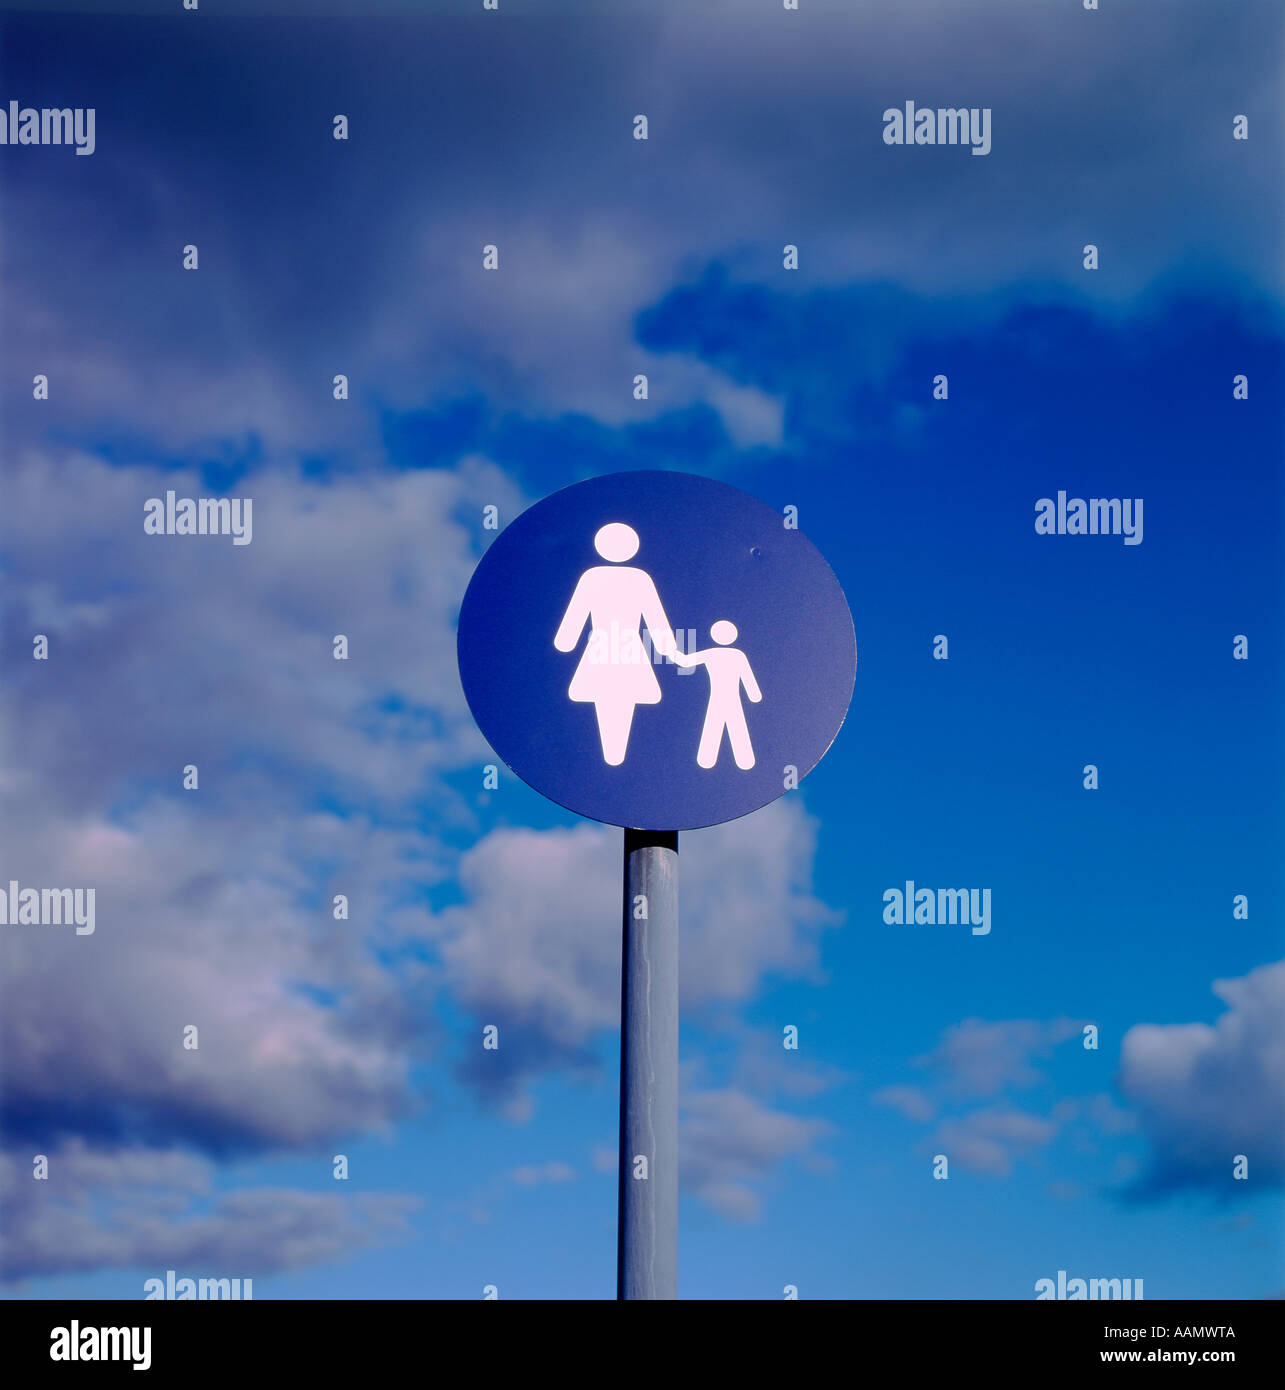 Adulte et enfant illustration sur un disque bleu contre un ciel d'orage Banque D'Images